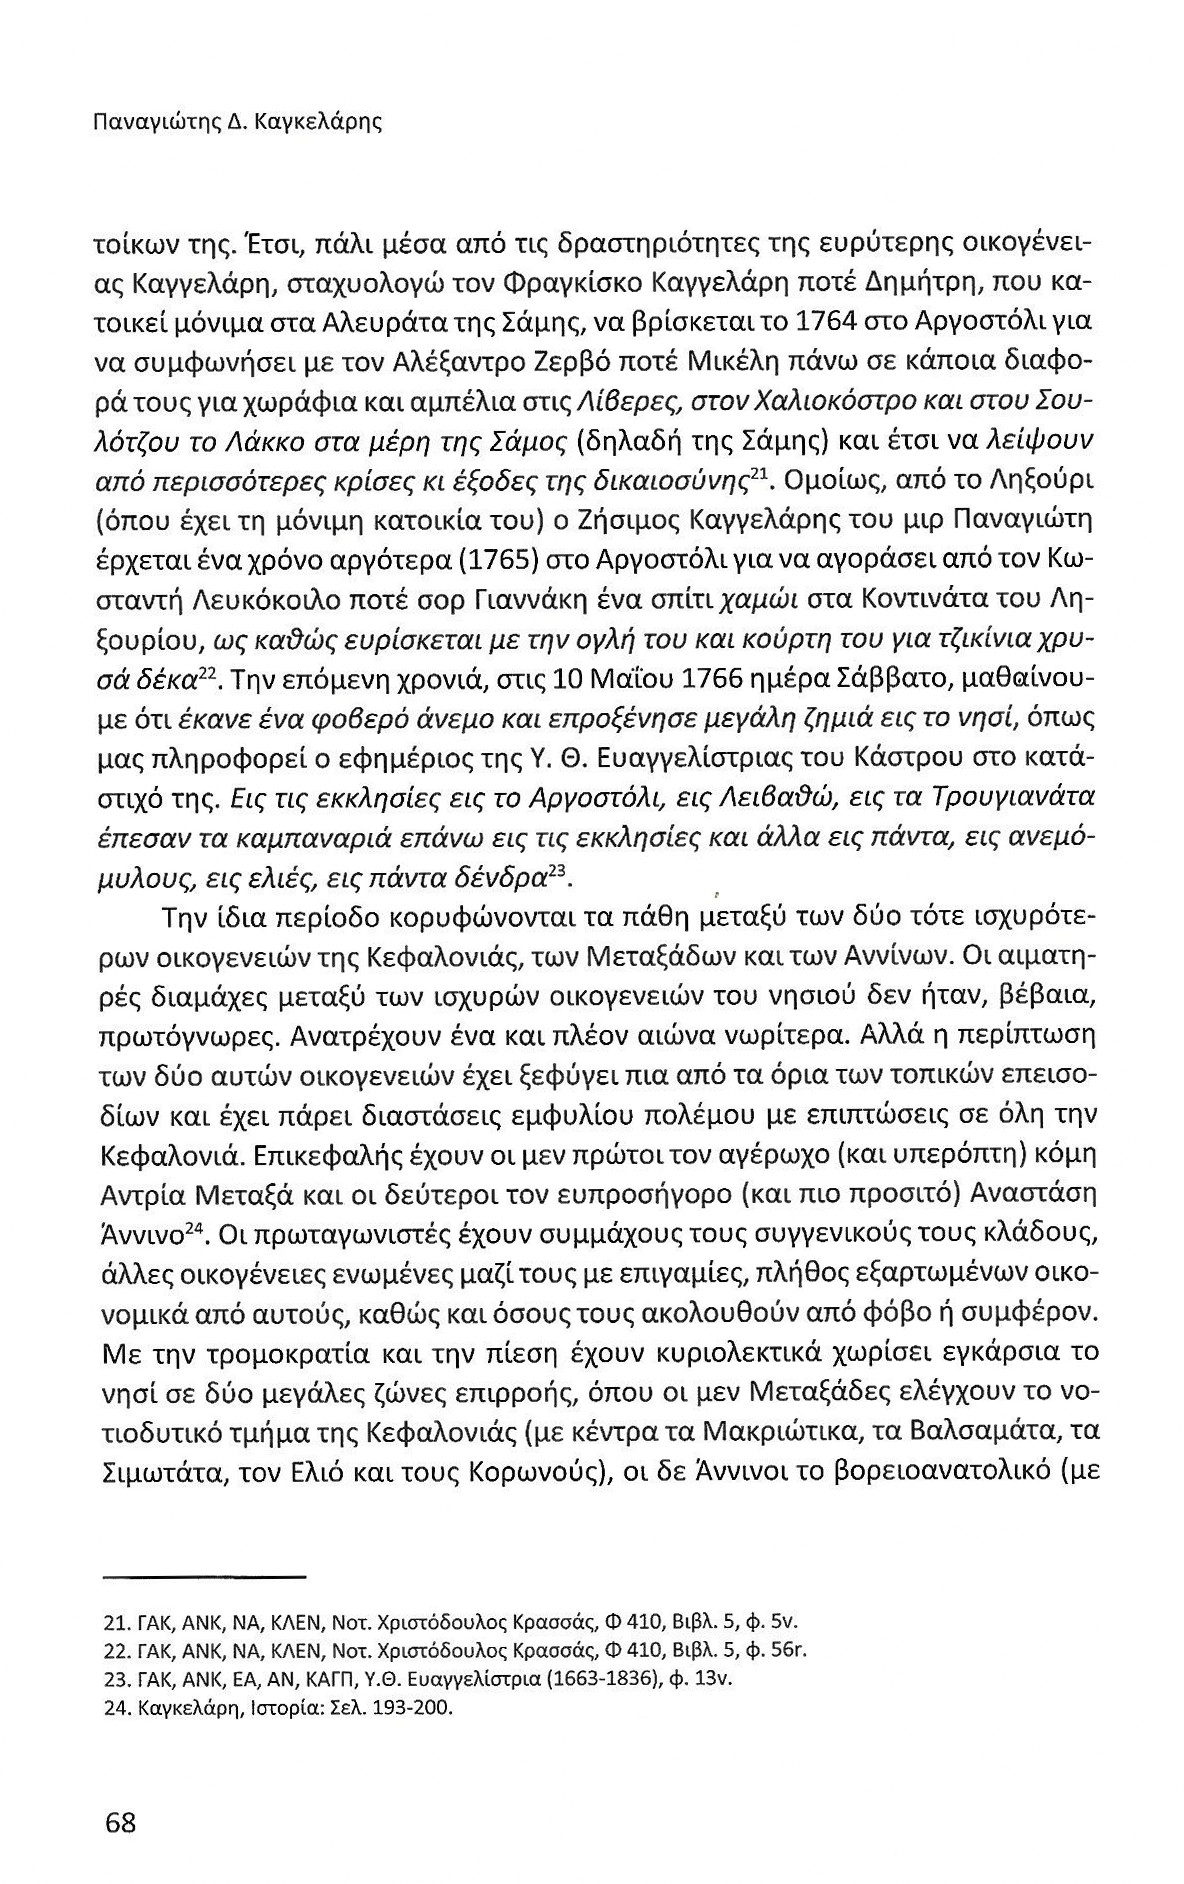 Πρώτα 50 χρόνια Αργοστολίου ως πρωτεύουσας Κεφαλονιάς, Ιονικά Ανάλεκτα, τ. 7, σελ. 68